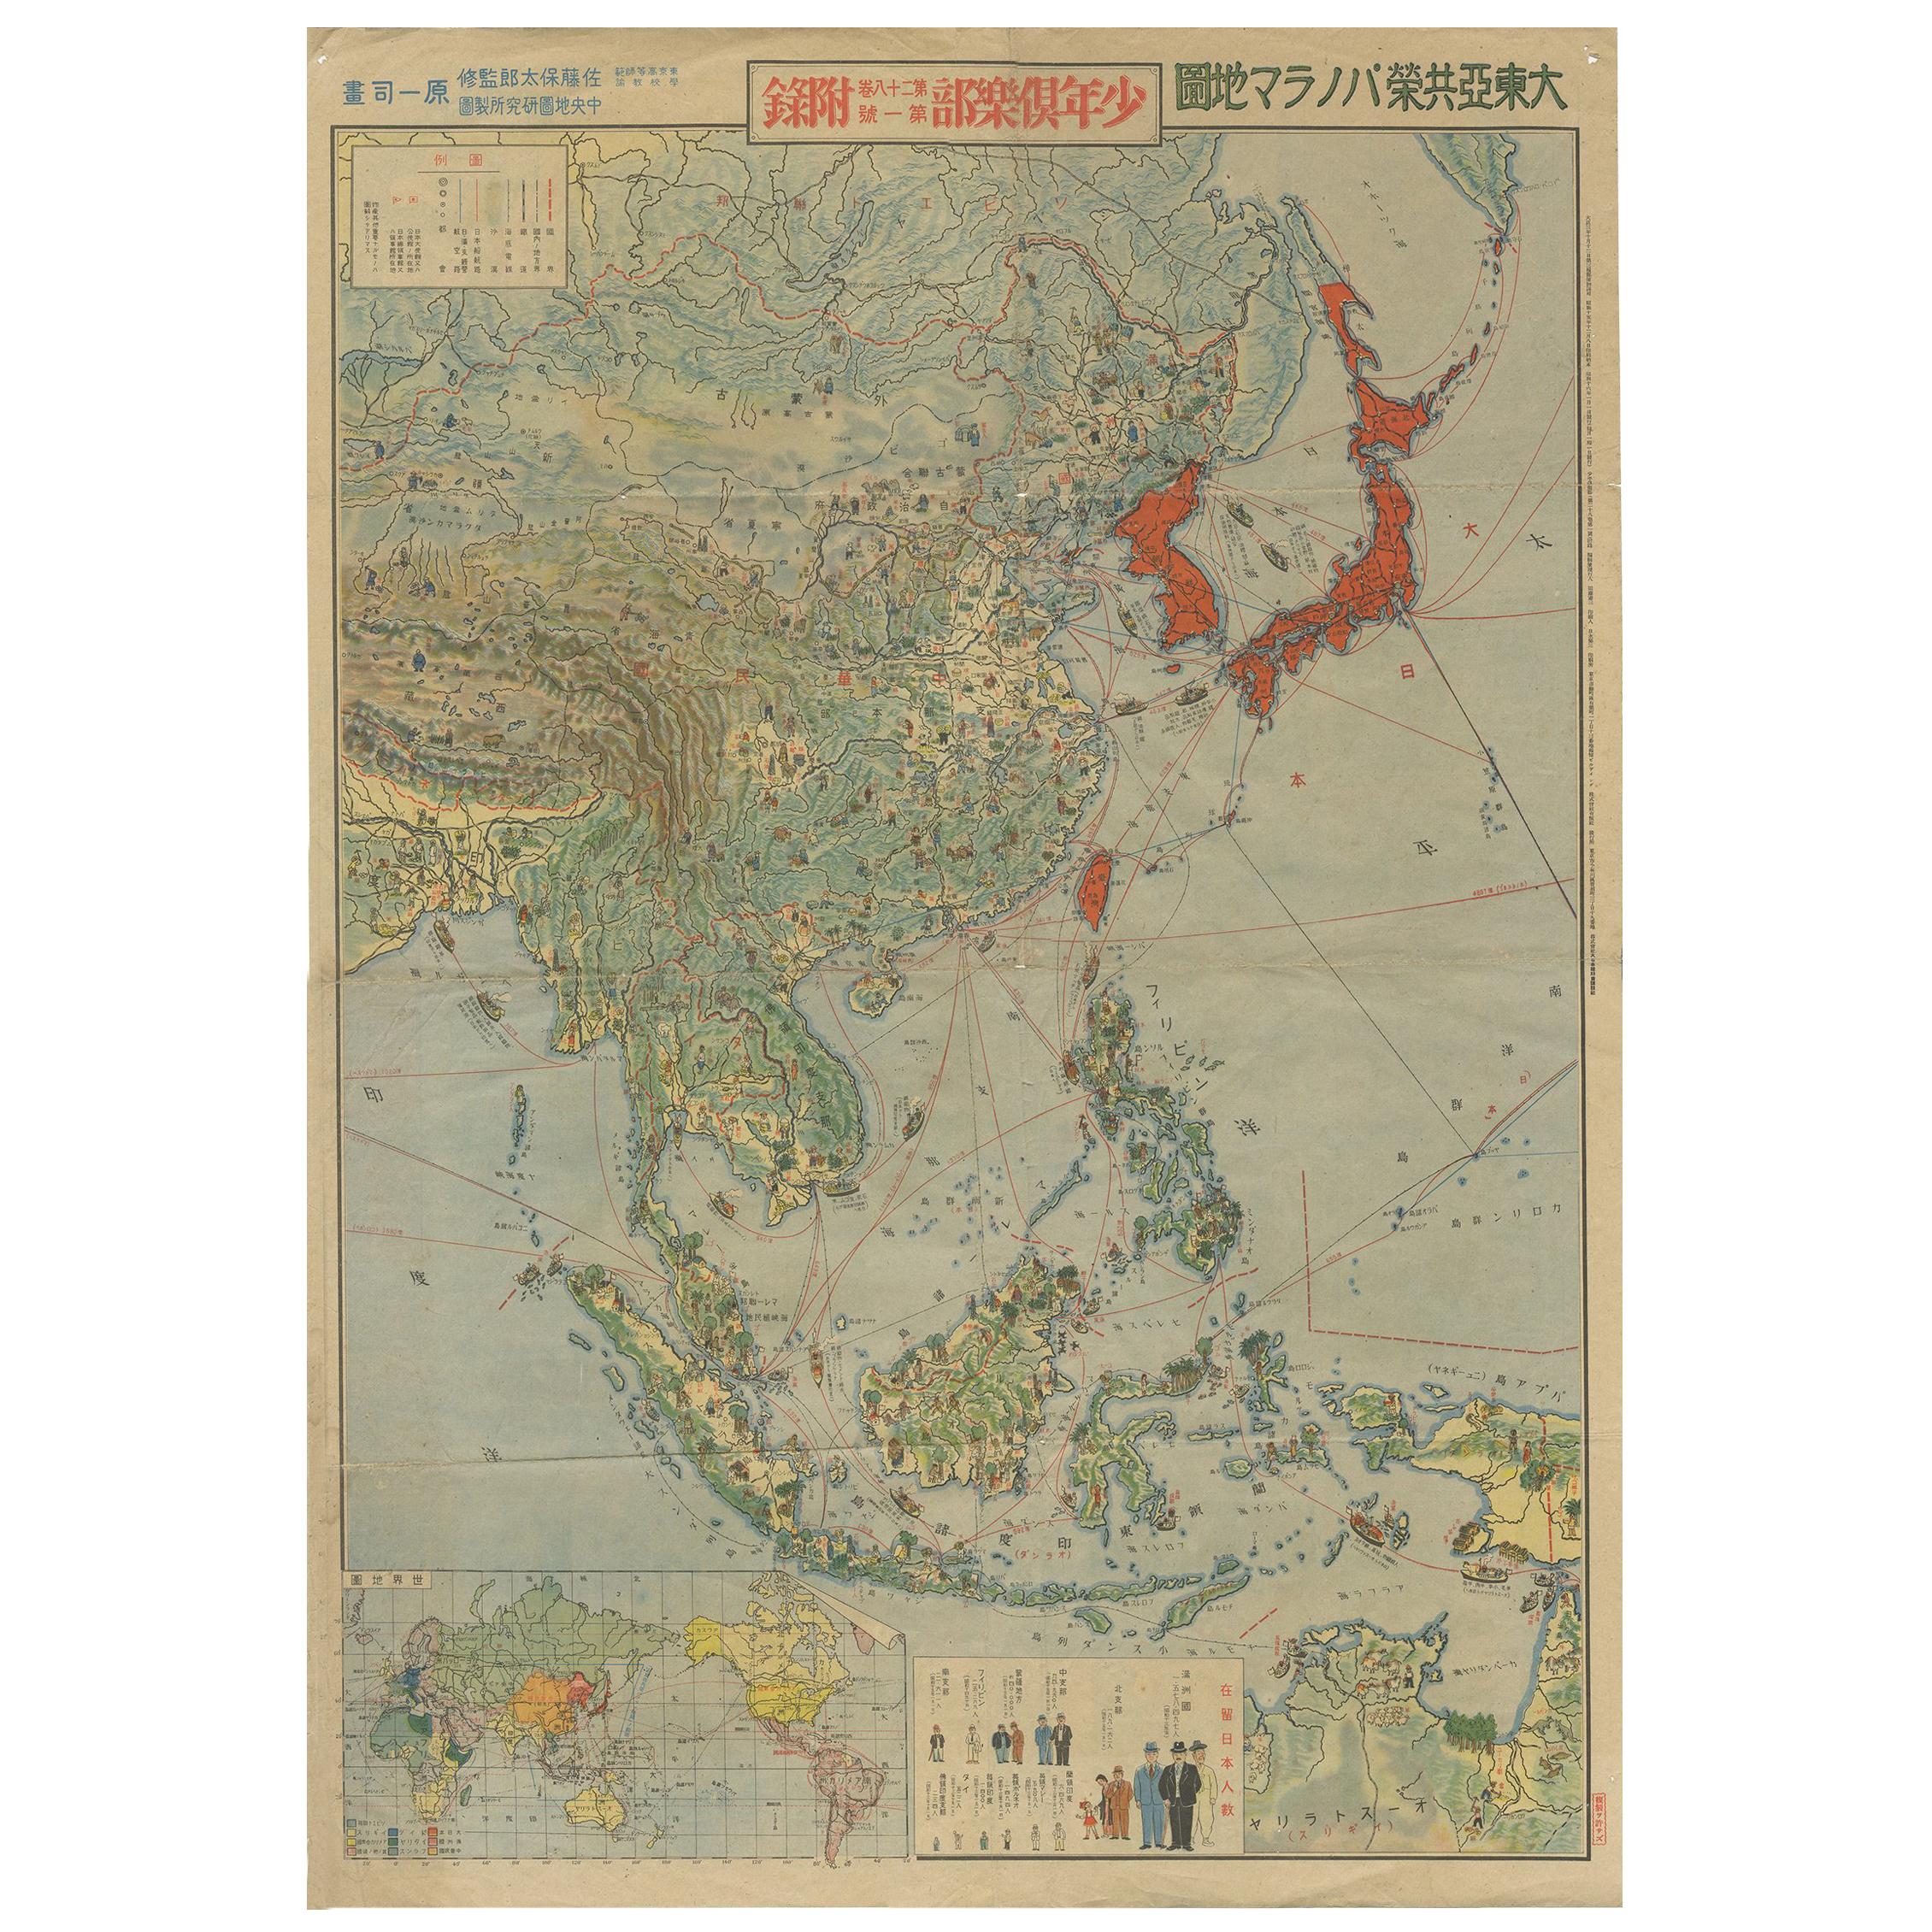 Antique World War II Map of Japan, 1940